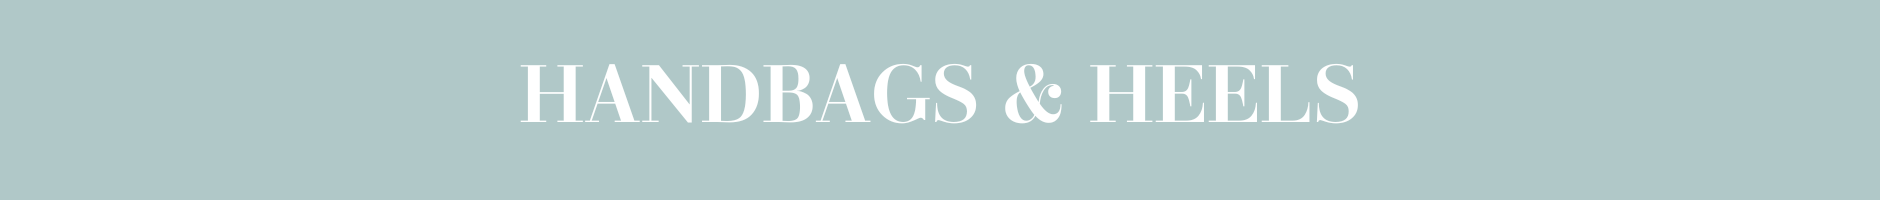 handbags-heels-web-banner.png